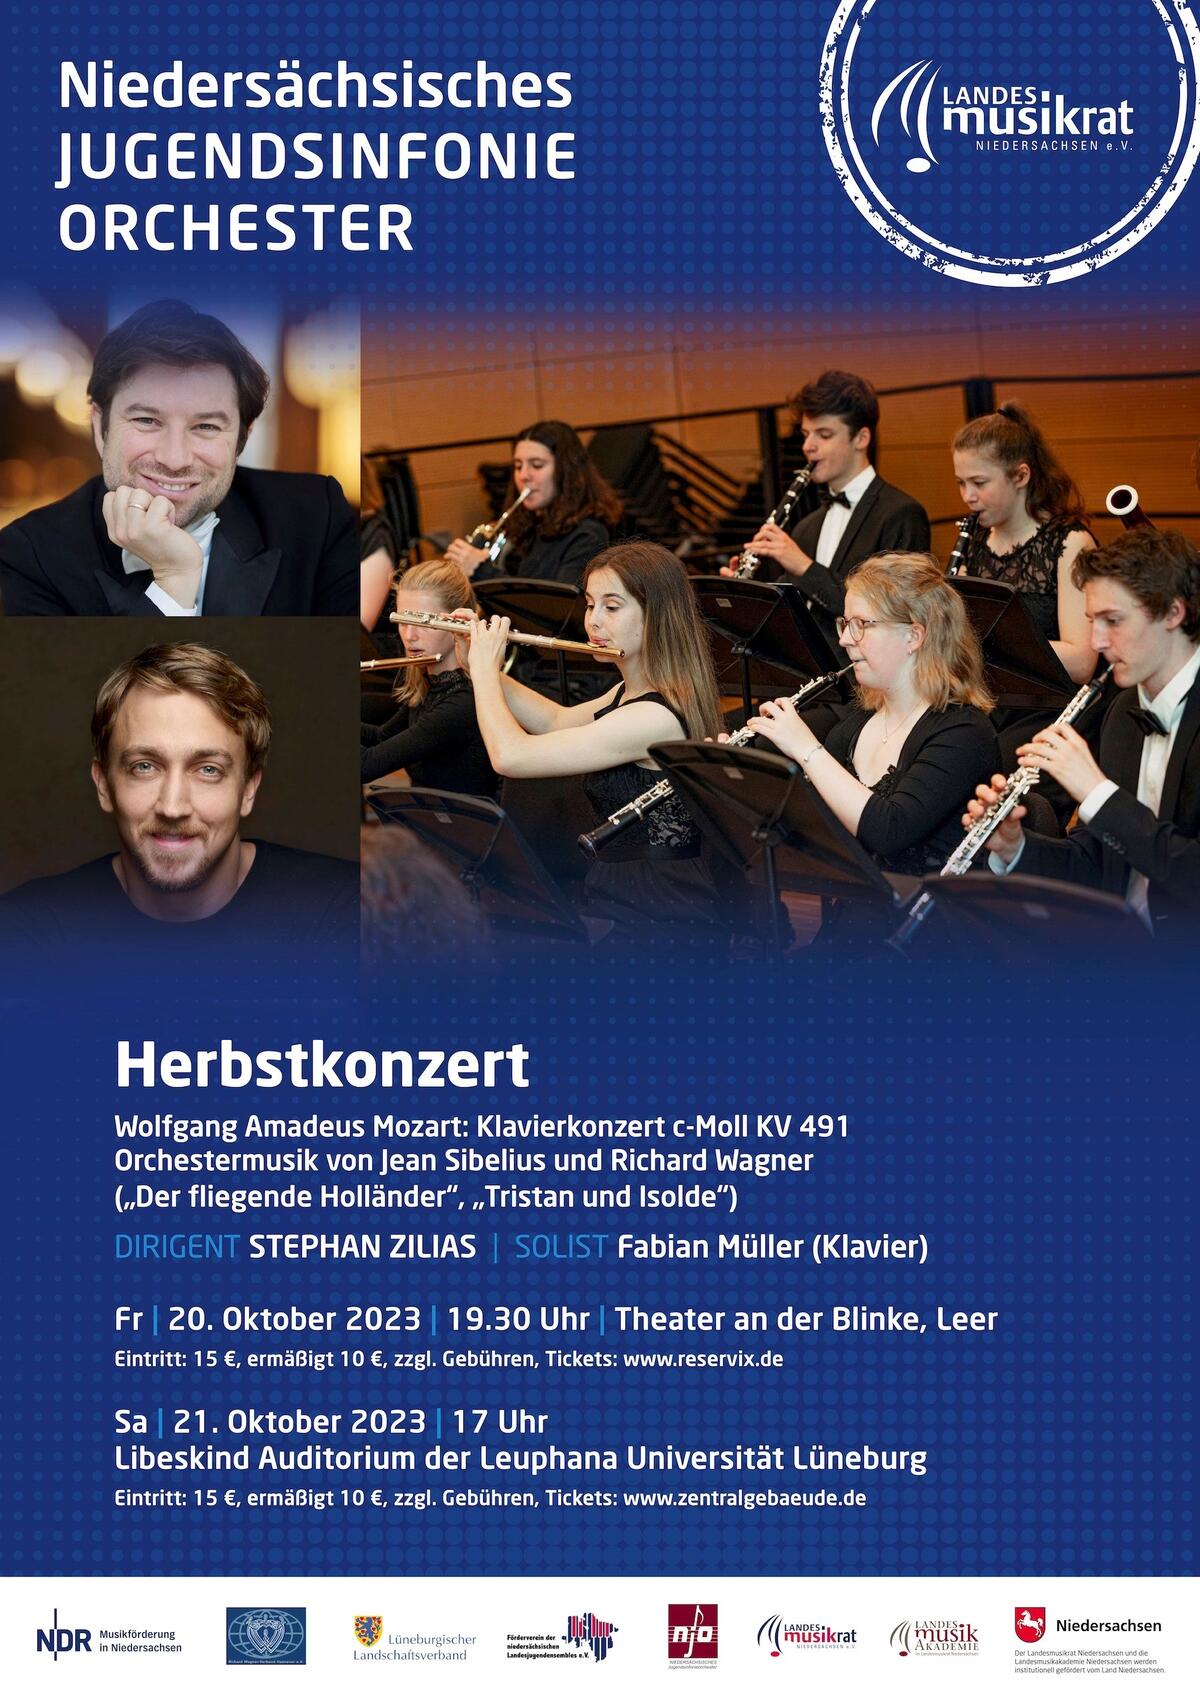 Bild vergrößern: Herbstkonzert des Niedersächsischen Jugendsinfonieorchester